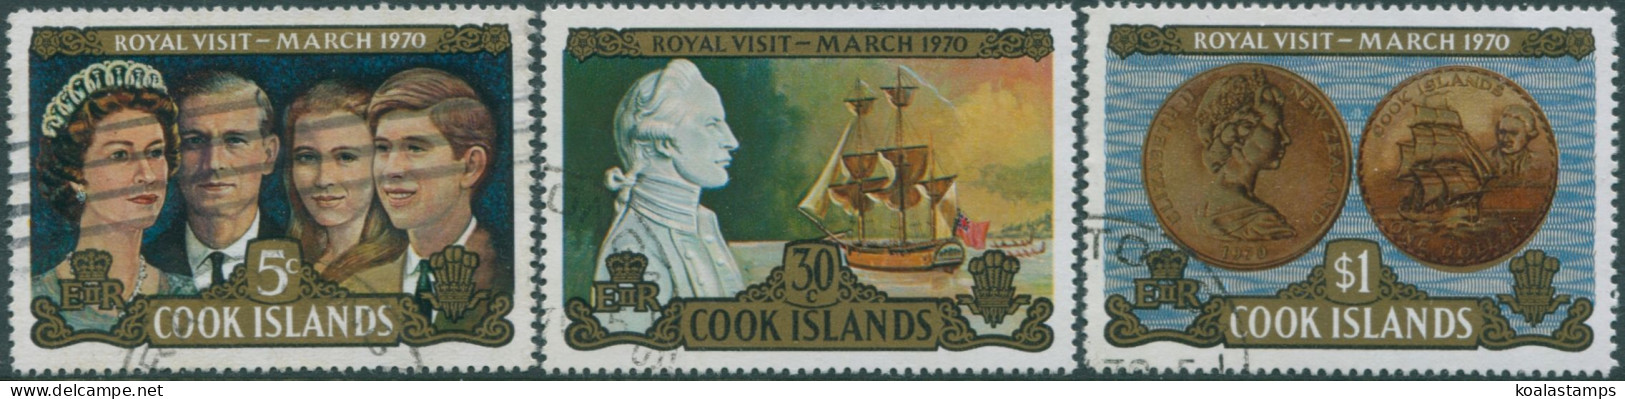 Cook Islands 1970 SG328-330 Royal Visit Set FU - Cook